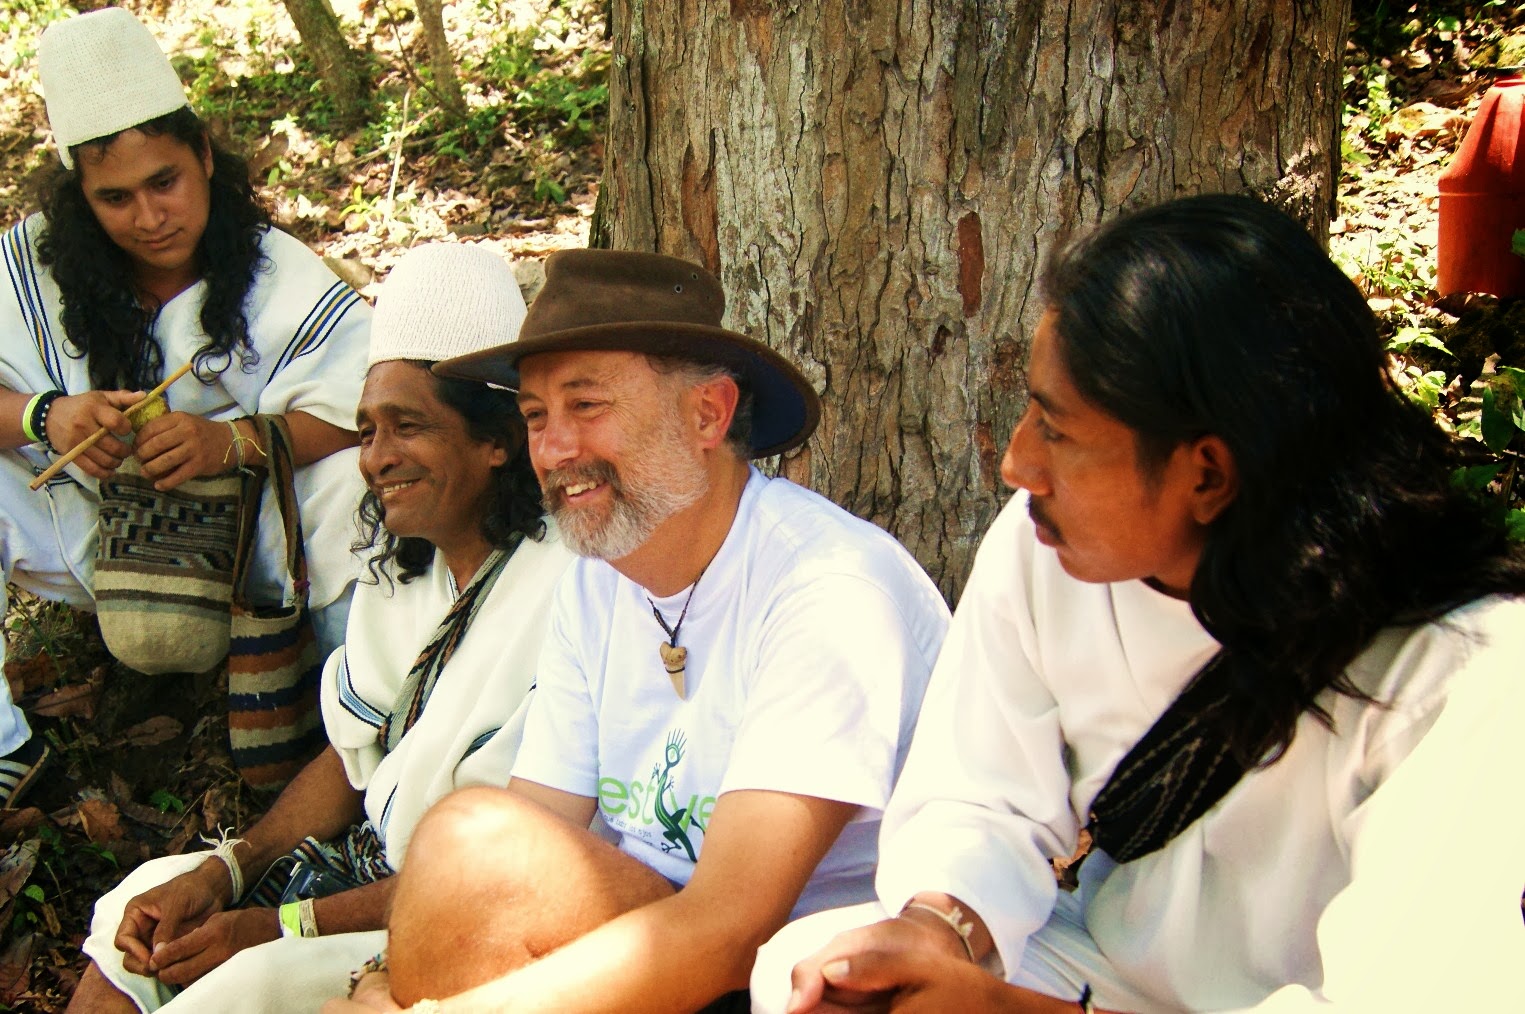 COLOMBIA con amigos aruhacos y cogis